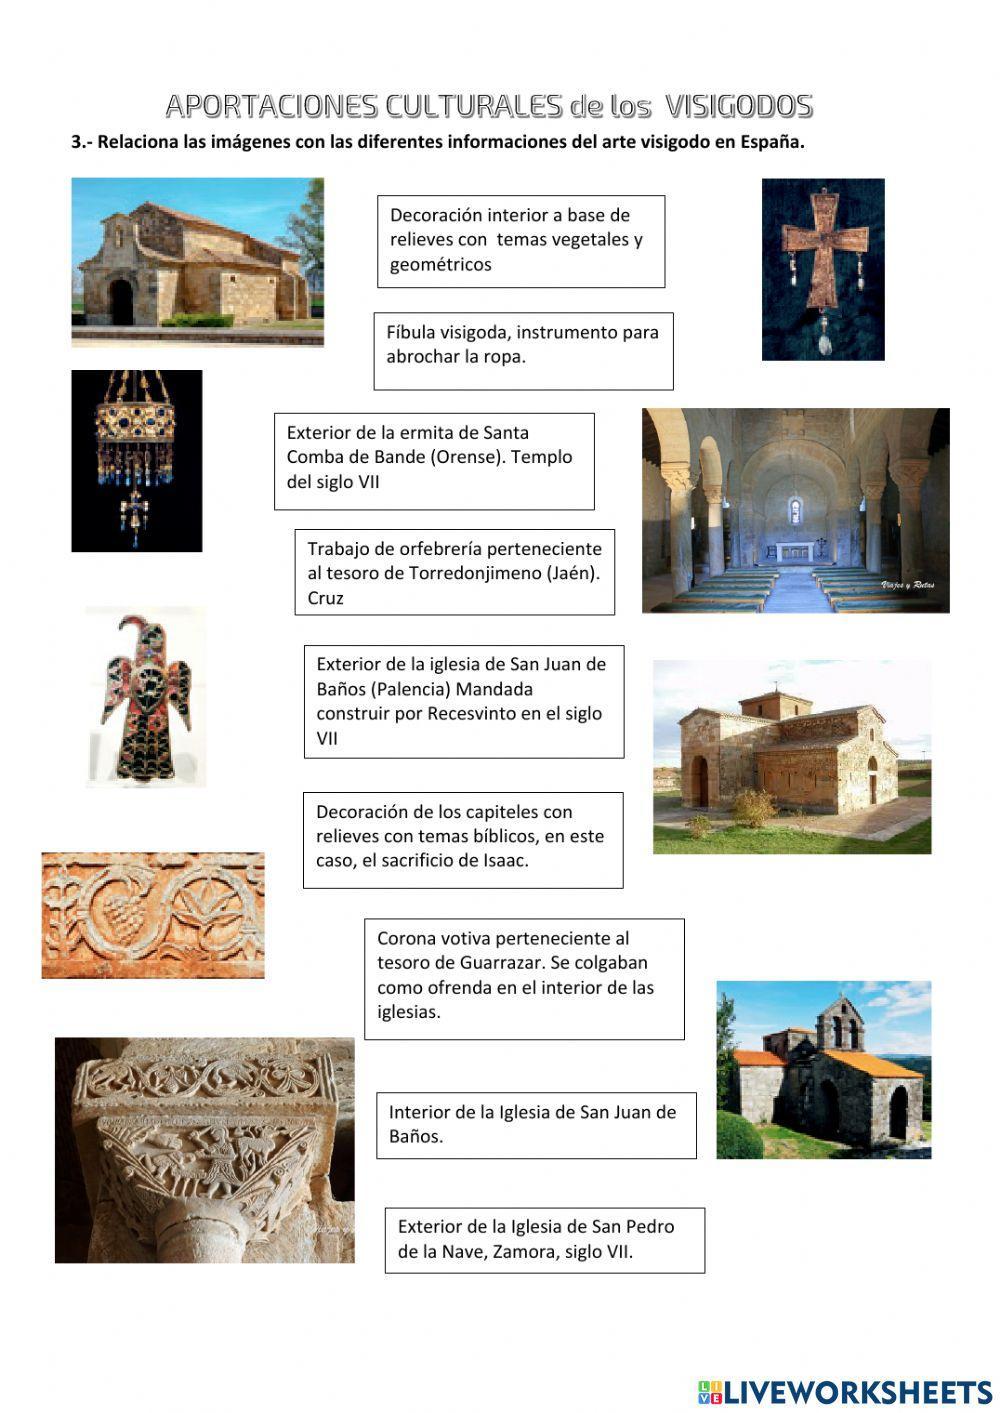 HISTORIA de los VISIGODOS en la Península Ibérica